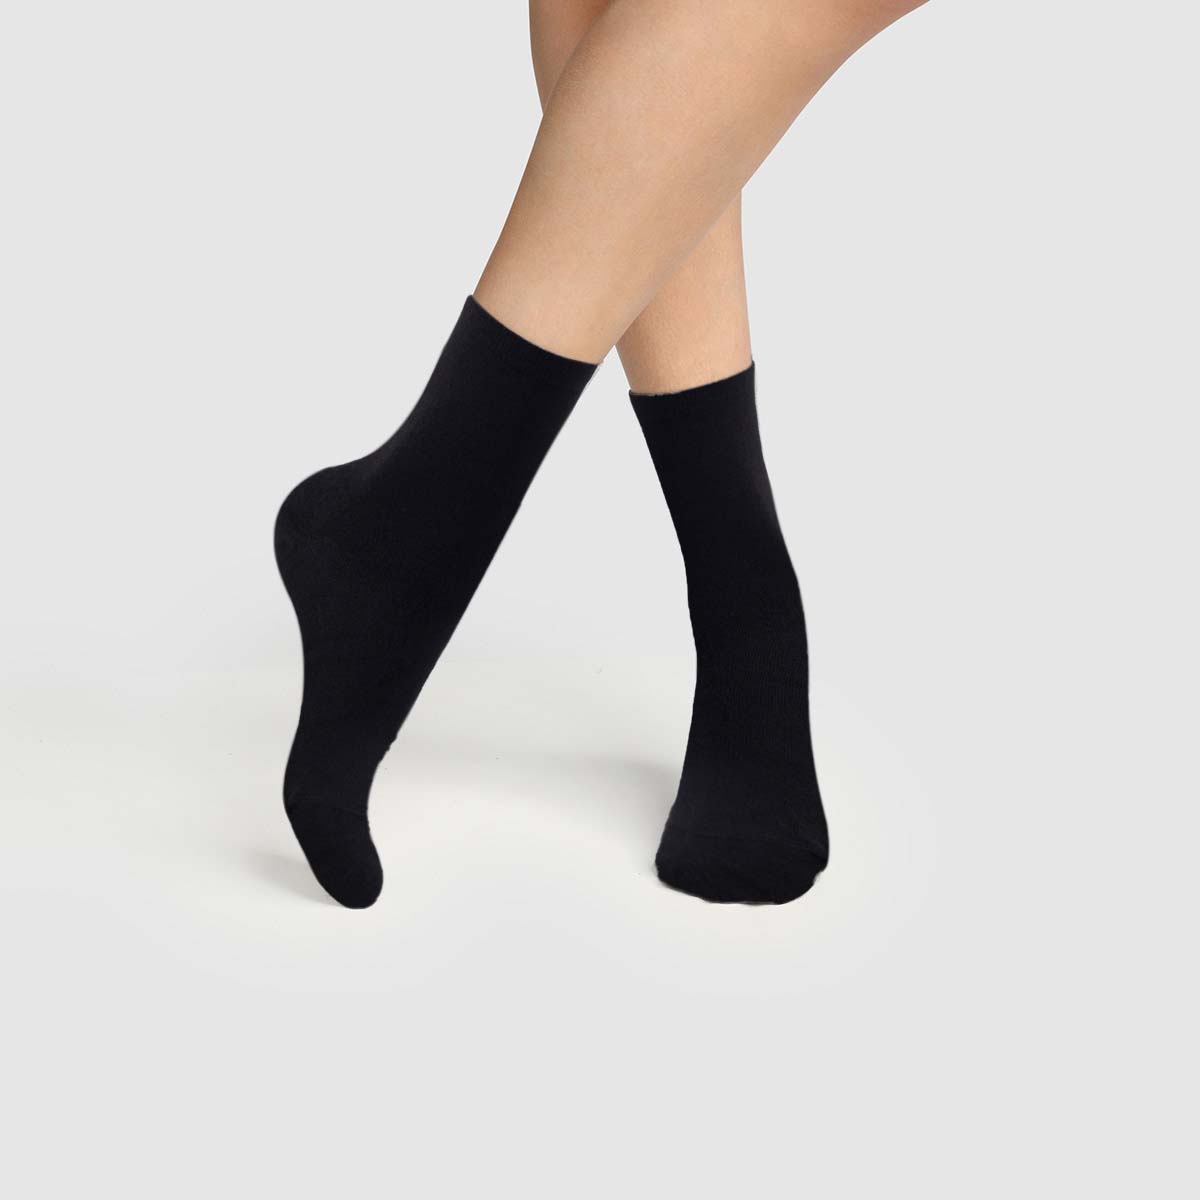 Kami Ladies Socks, Soft Bamboo Socks Anti Bacterial 6 Pairs